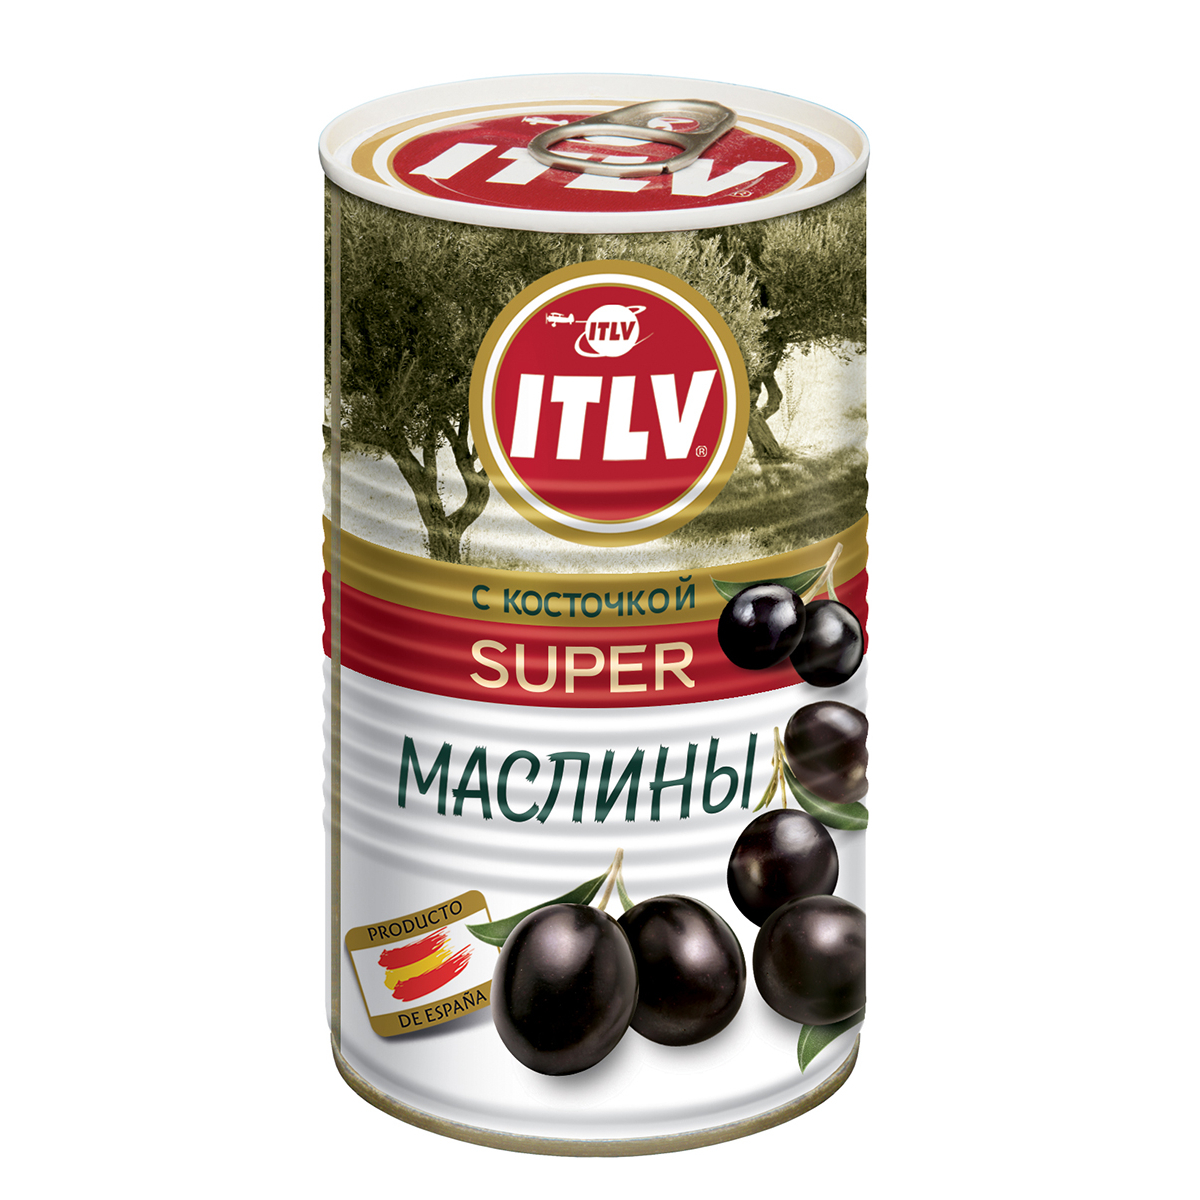 Маслины ITLV с косточкой Super 370 мл маслины hungrow без косточек 300 гр